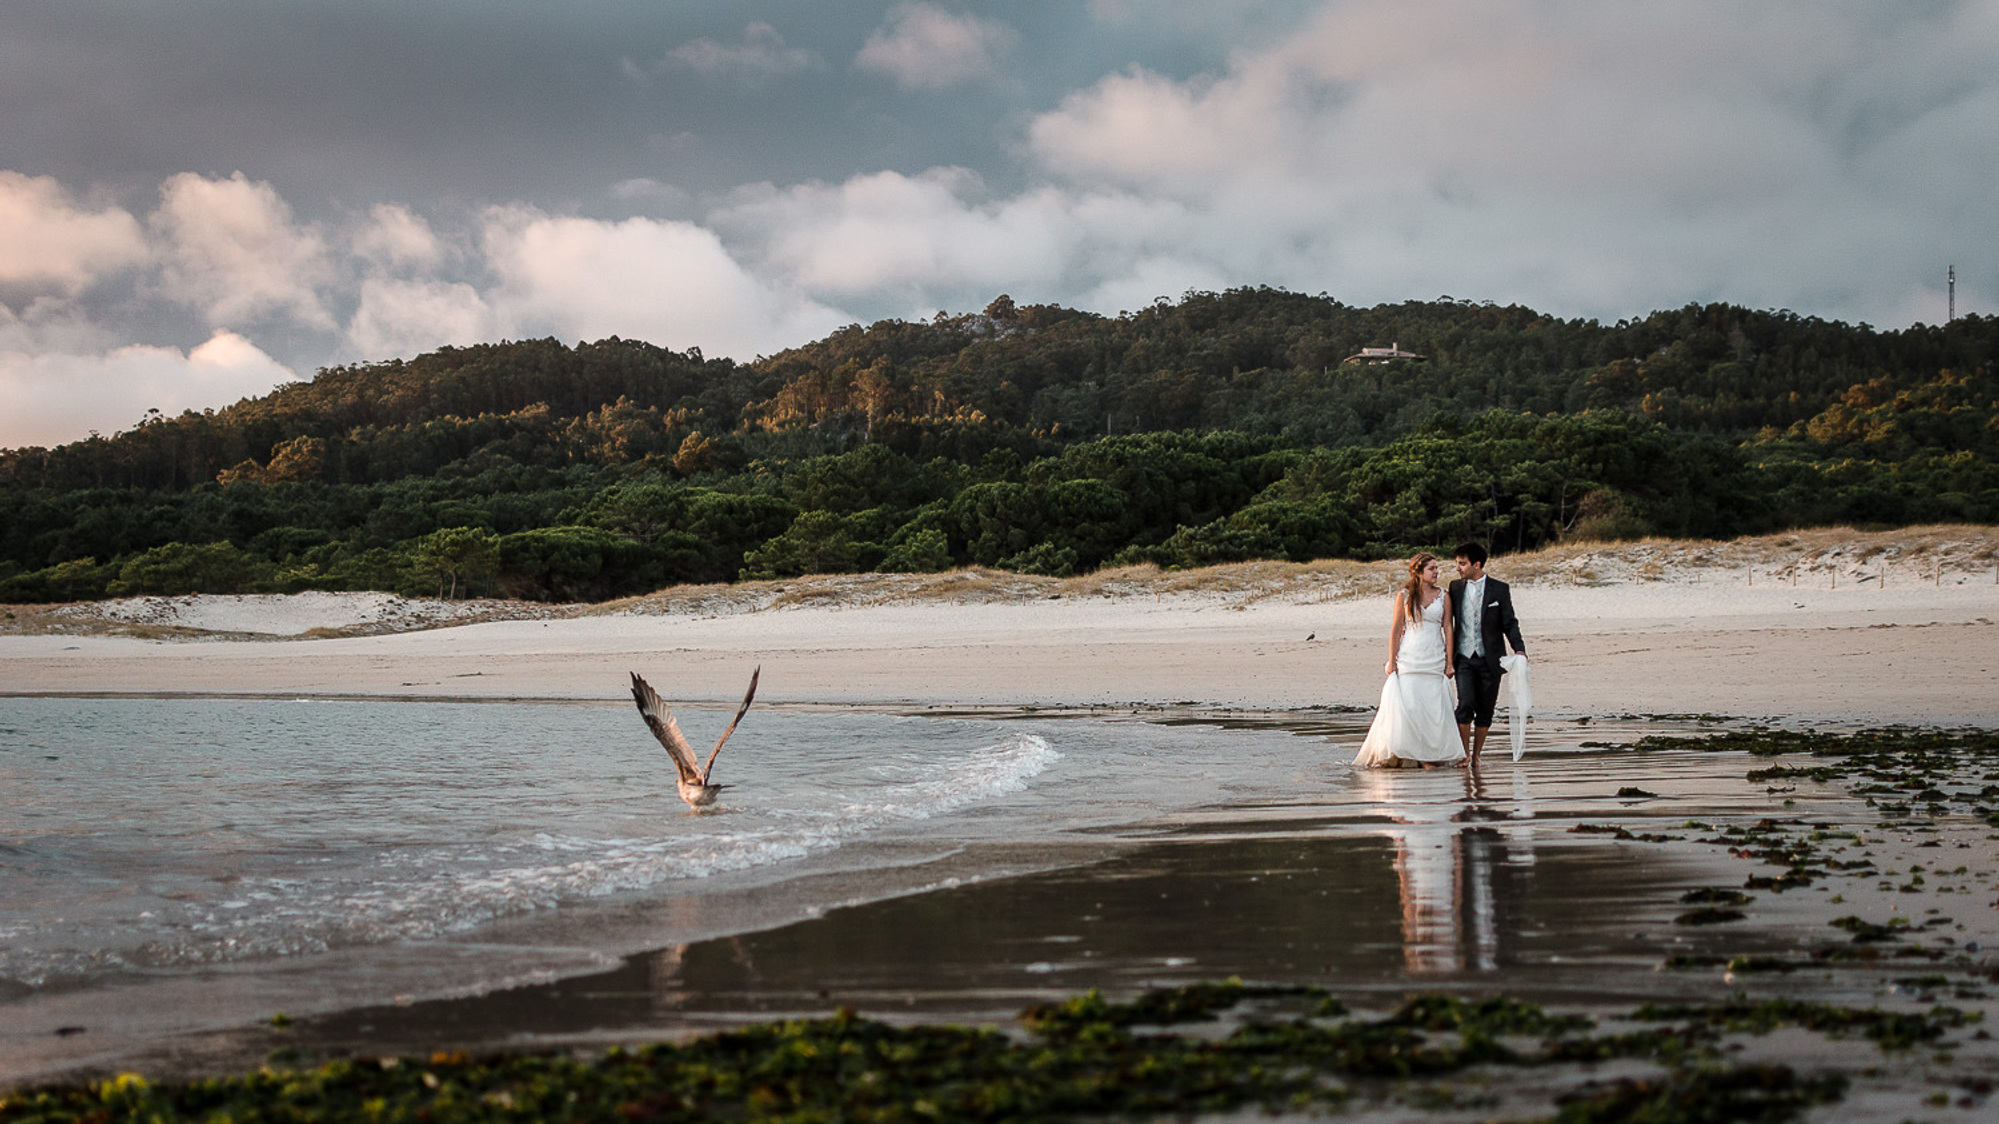 Fotografo de boda Ourense. Postboda en la playa en Galicia.